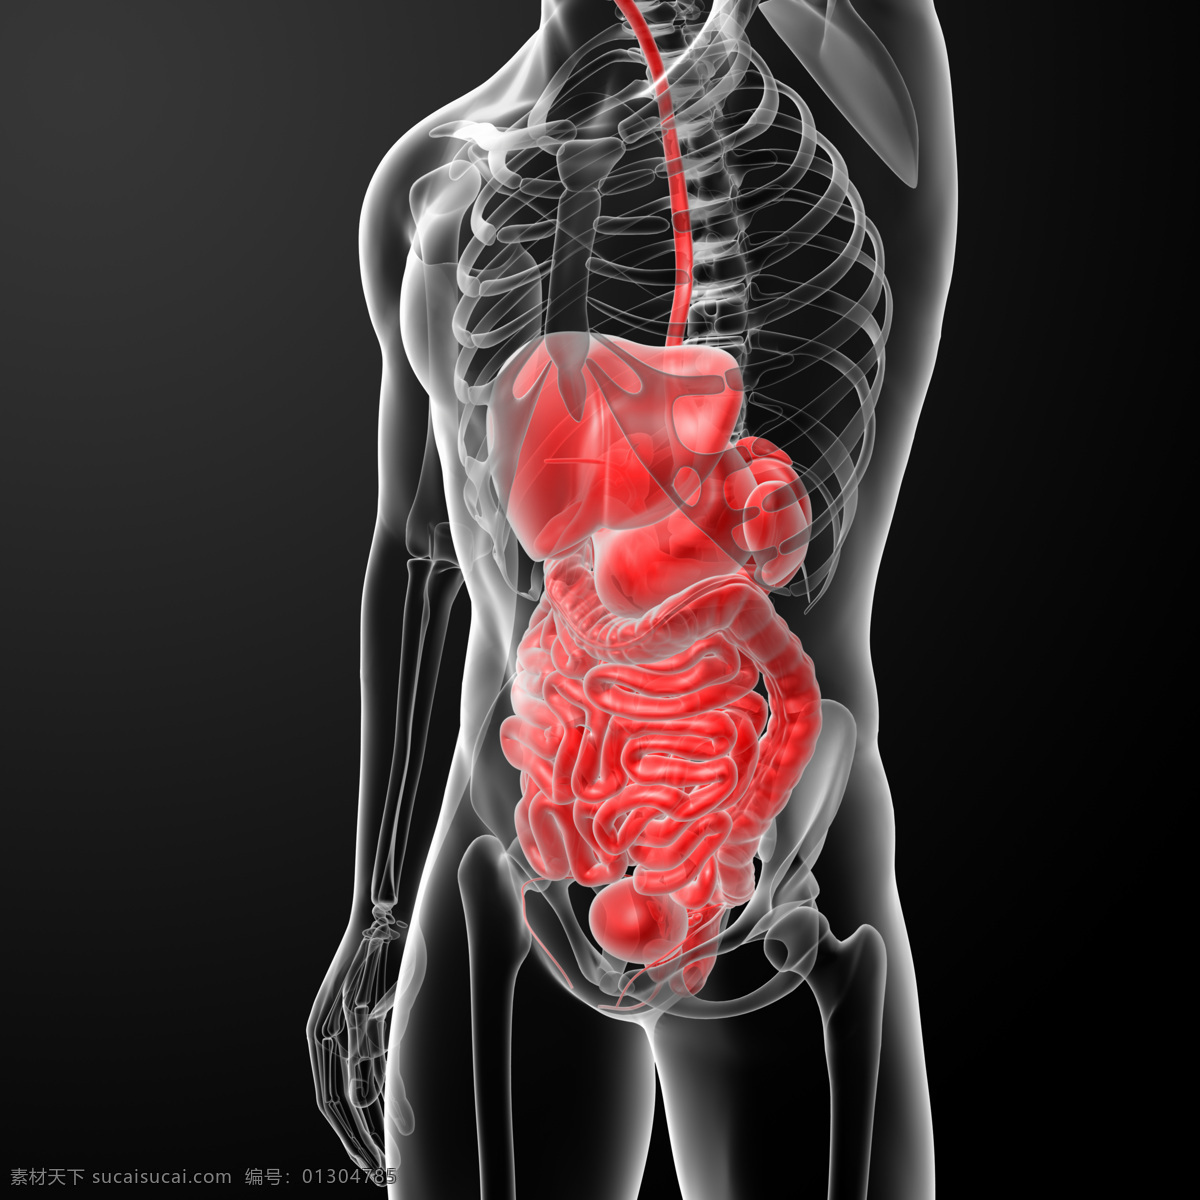 科学研究 人体骨骼 现代科技 肝脏肠胃结构 肝脏 肠胃 大肠 肾脏 人体结构 人体肌肉 人体标本 人体构造 医学标本 矢量图